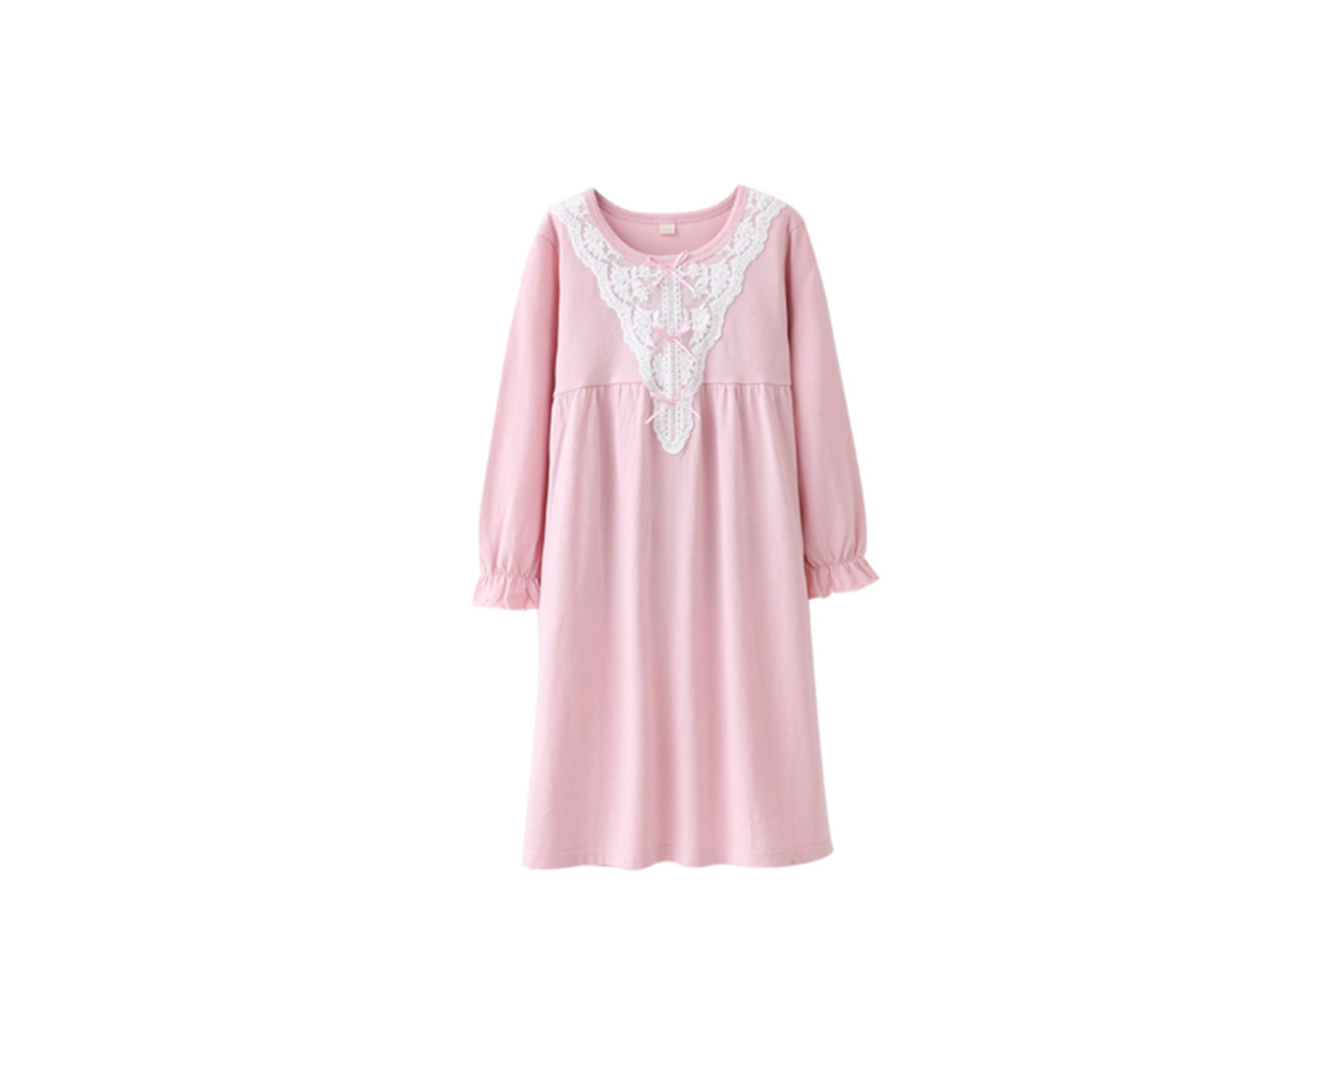 Cotton Little Girls Sleepwear Lace Bowknot Princess Long Sleeve Nightwear Dress - PINK